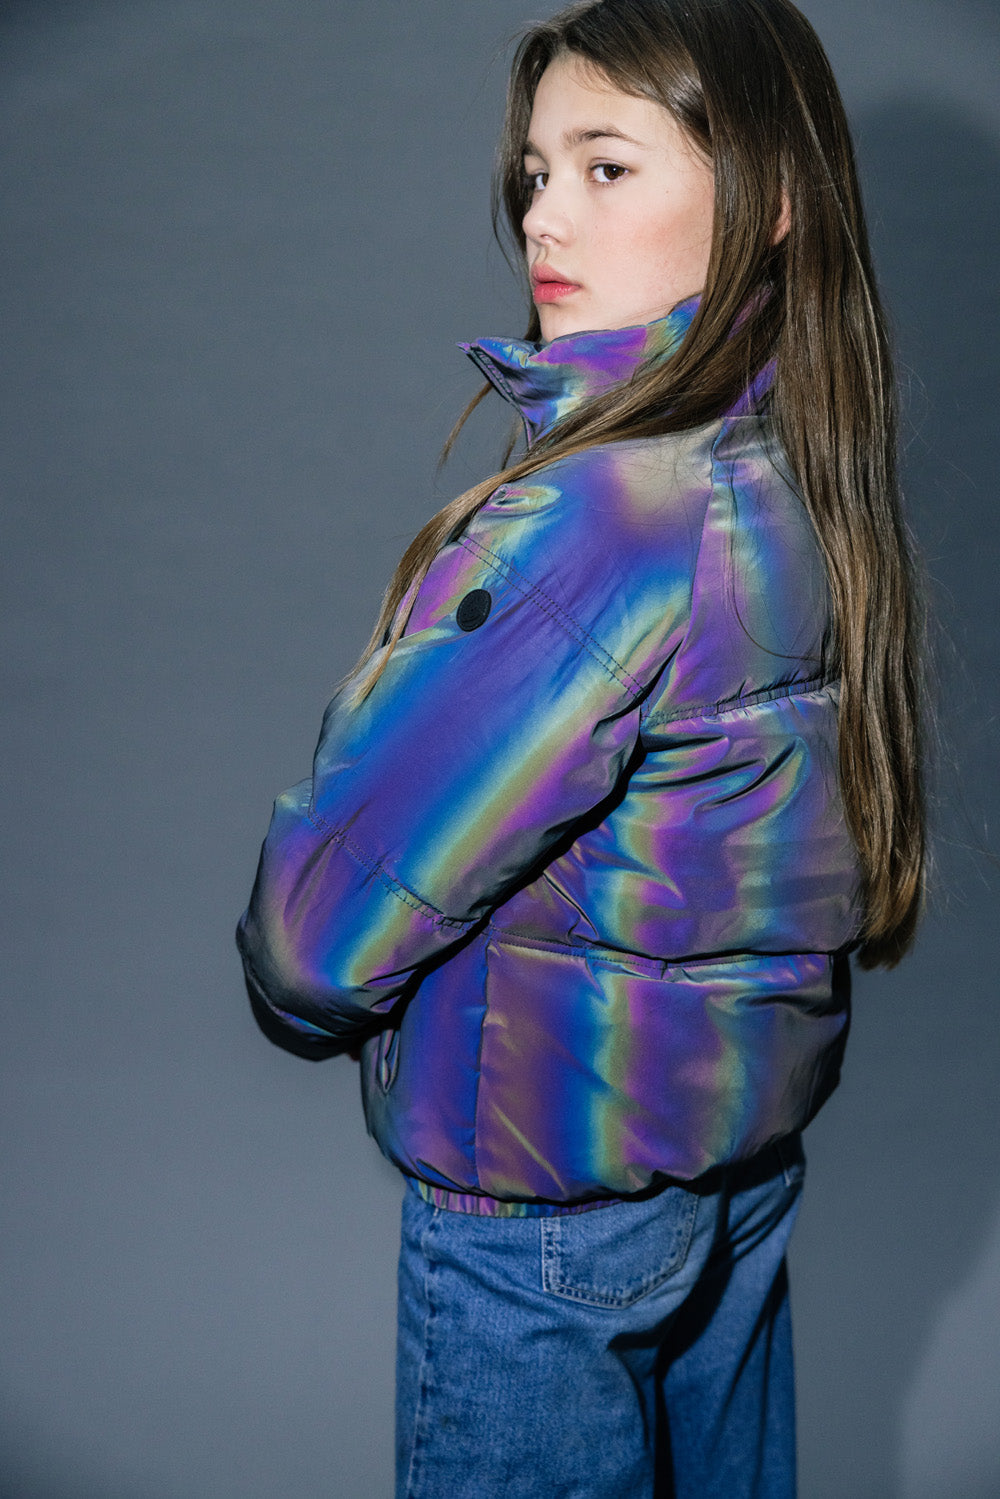 Meisjes Reflective Outerwear Jacket van LOOXS 10sixteen in de kleur refective in maat 176.